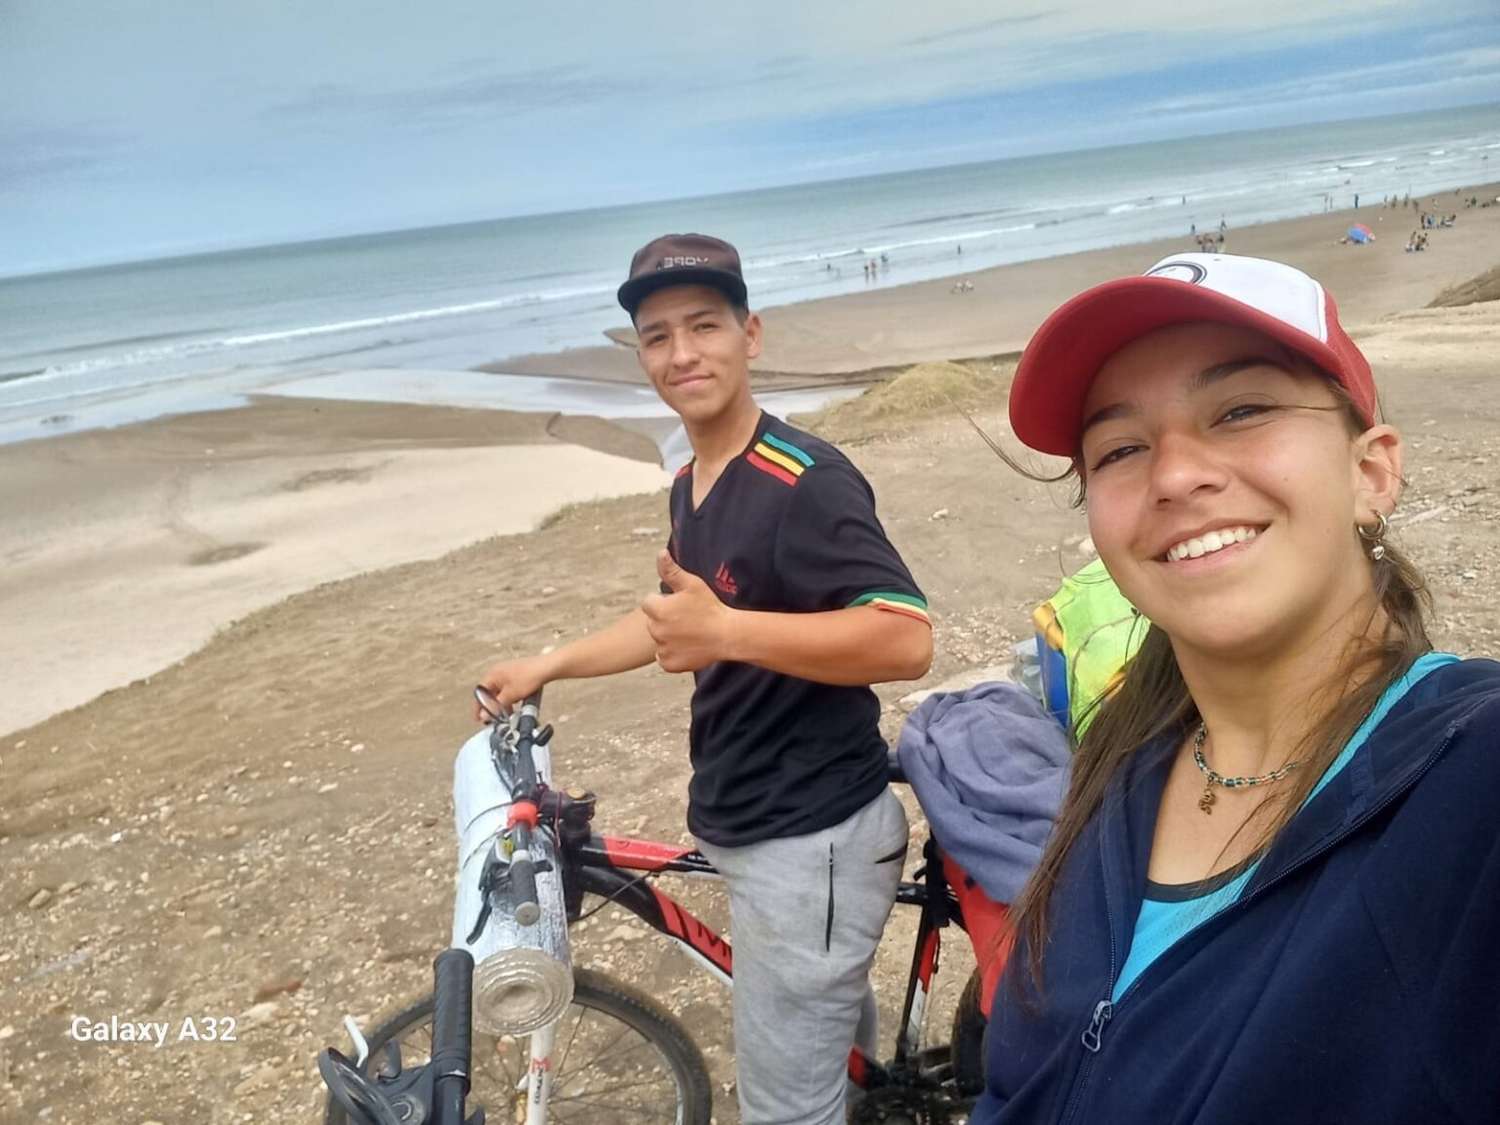 Dos chicos recorrieron 530 kilómetros en bicicleta para llegar a Necochea